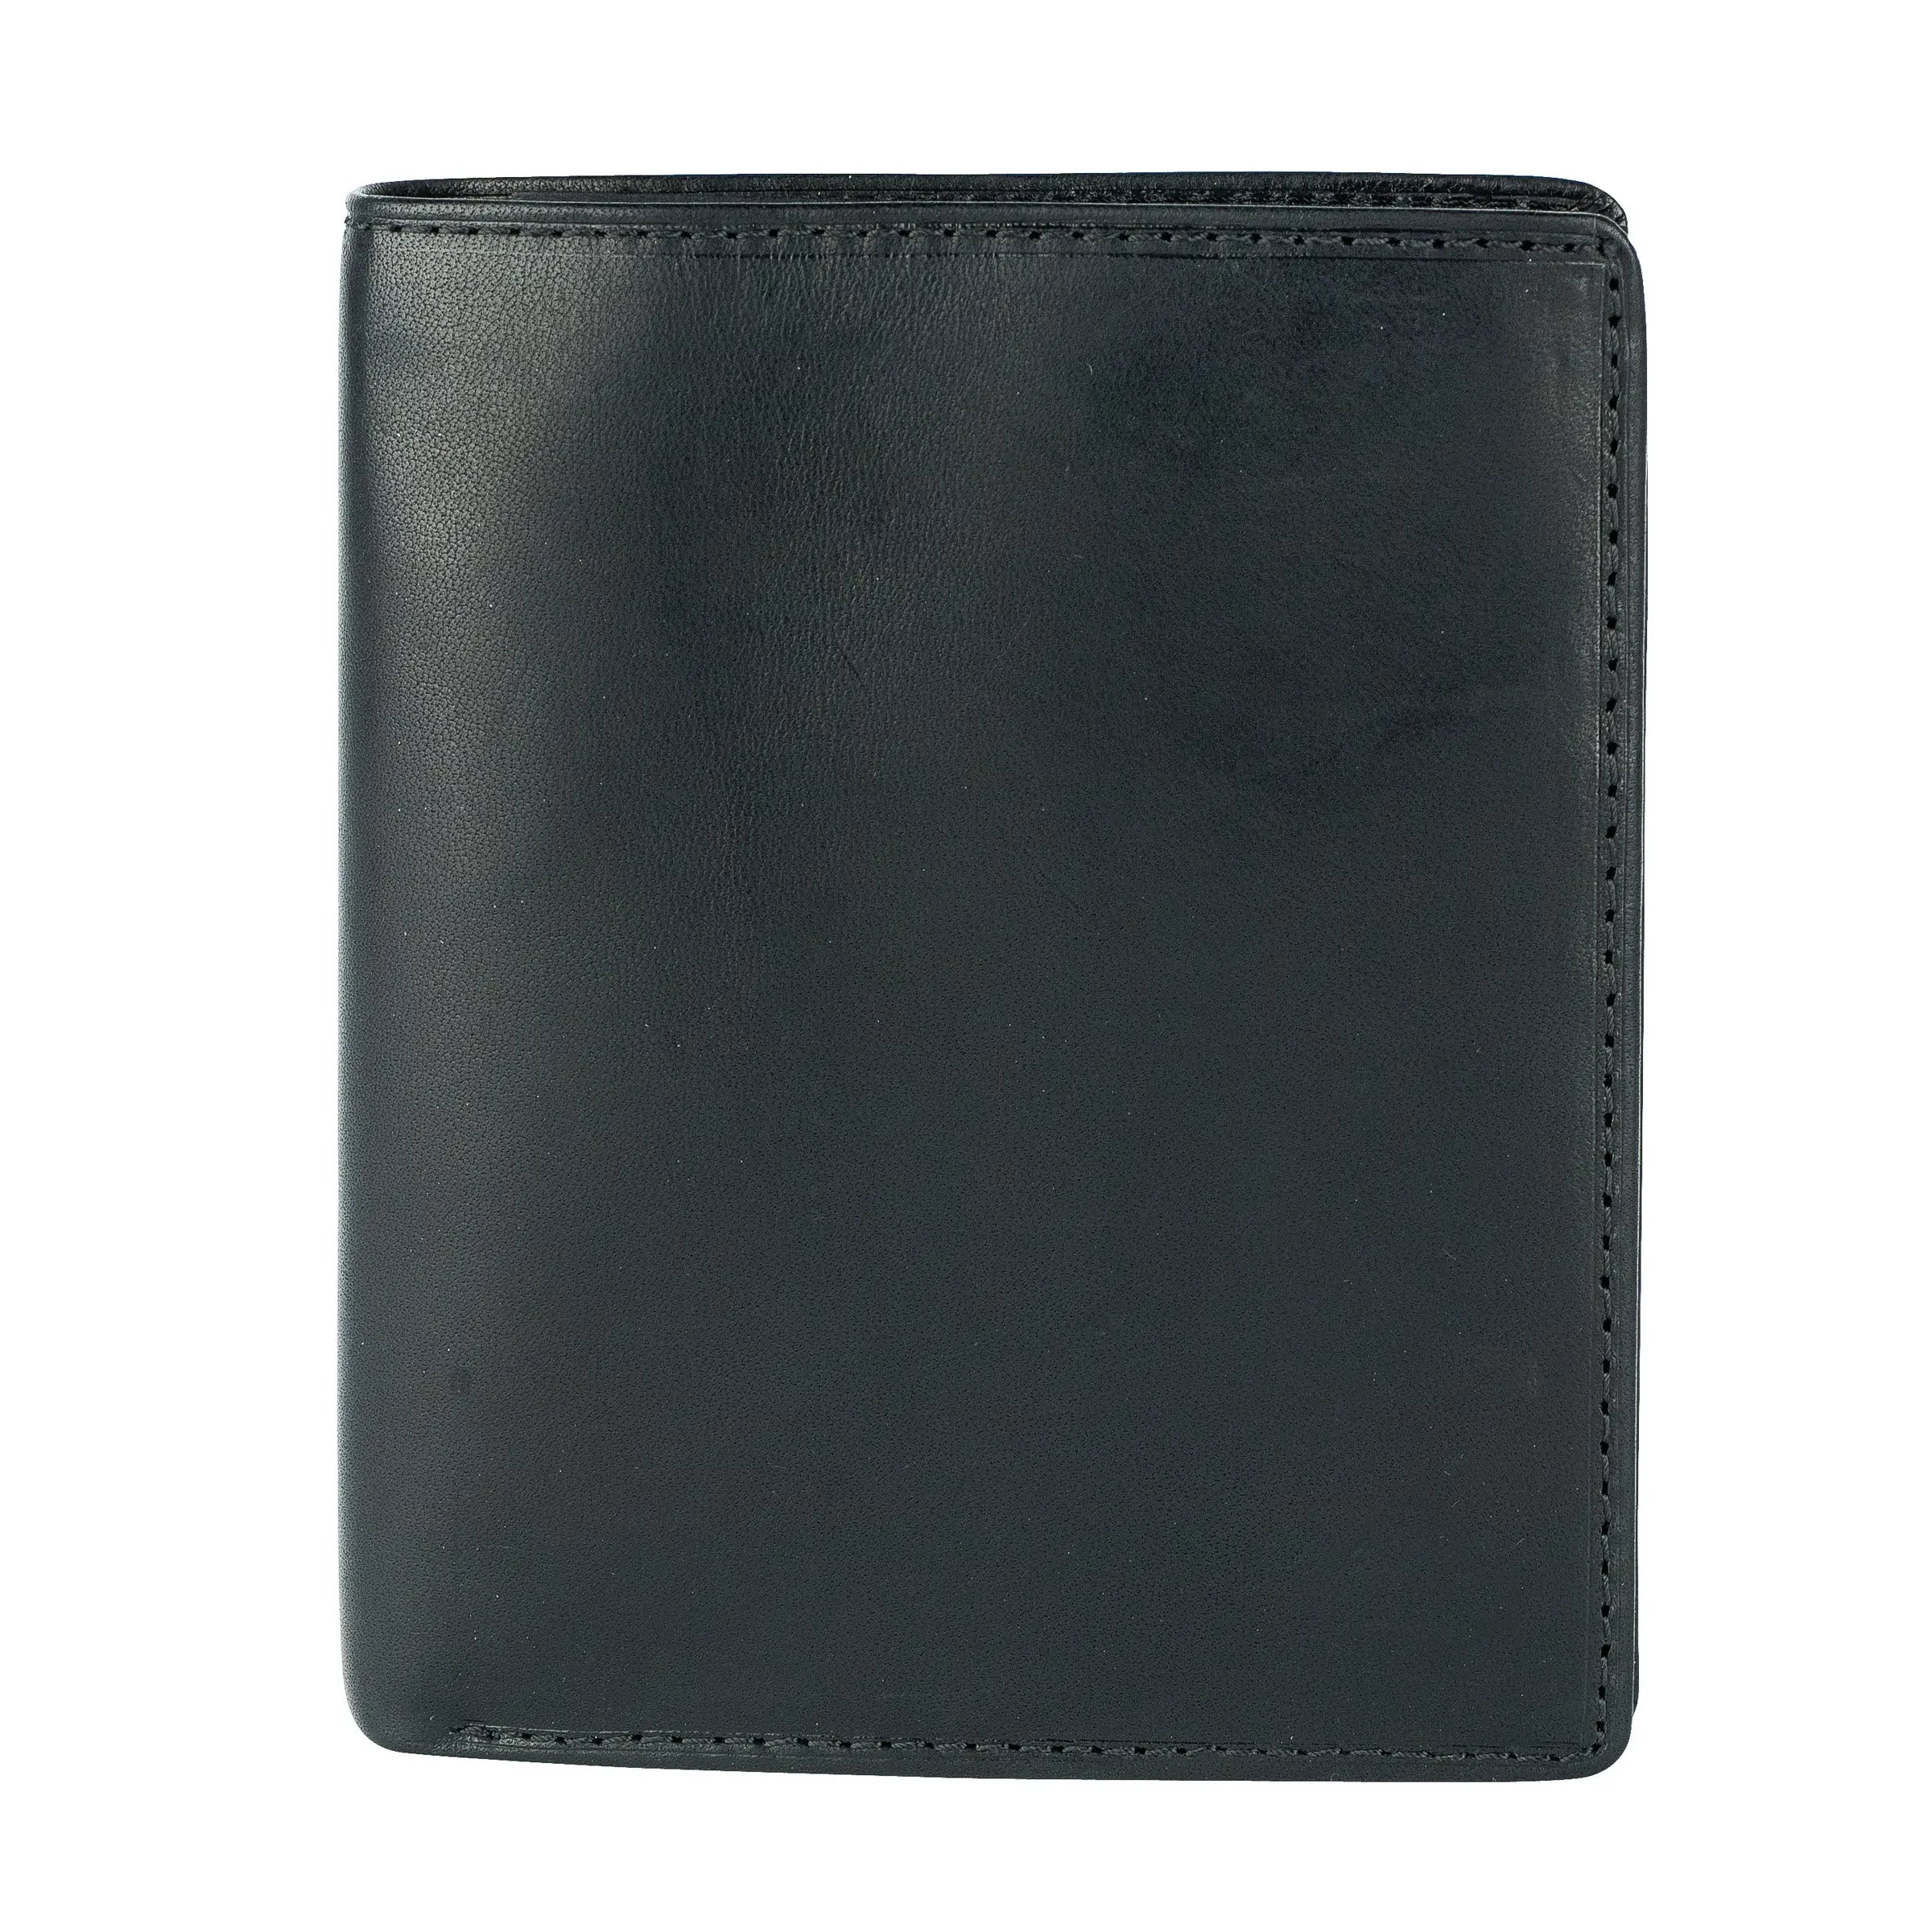 Tony Perotti Furbo Billfold wallet 13 cm - Black